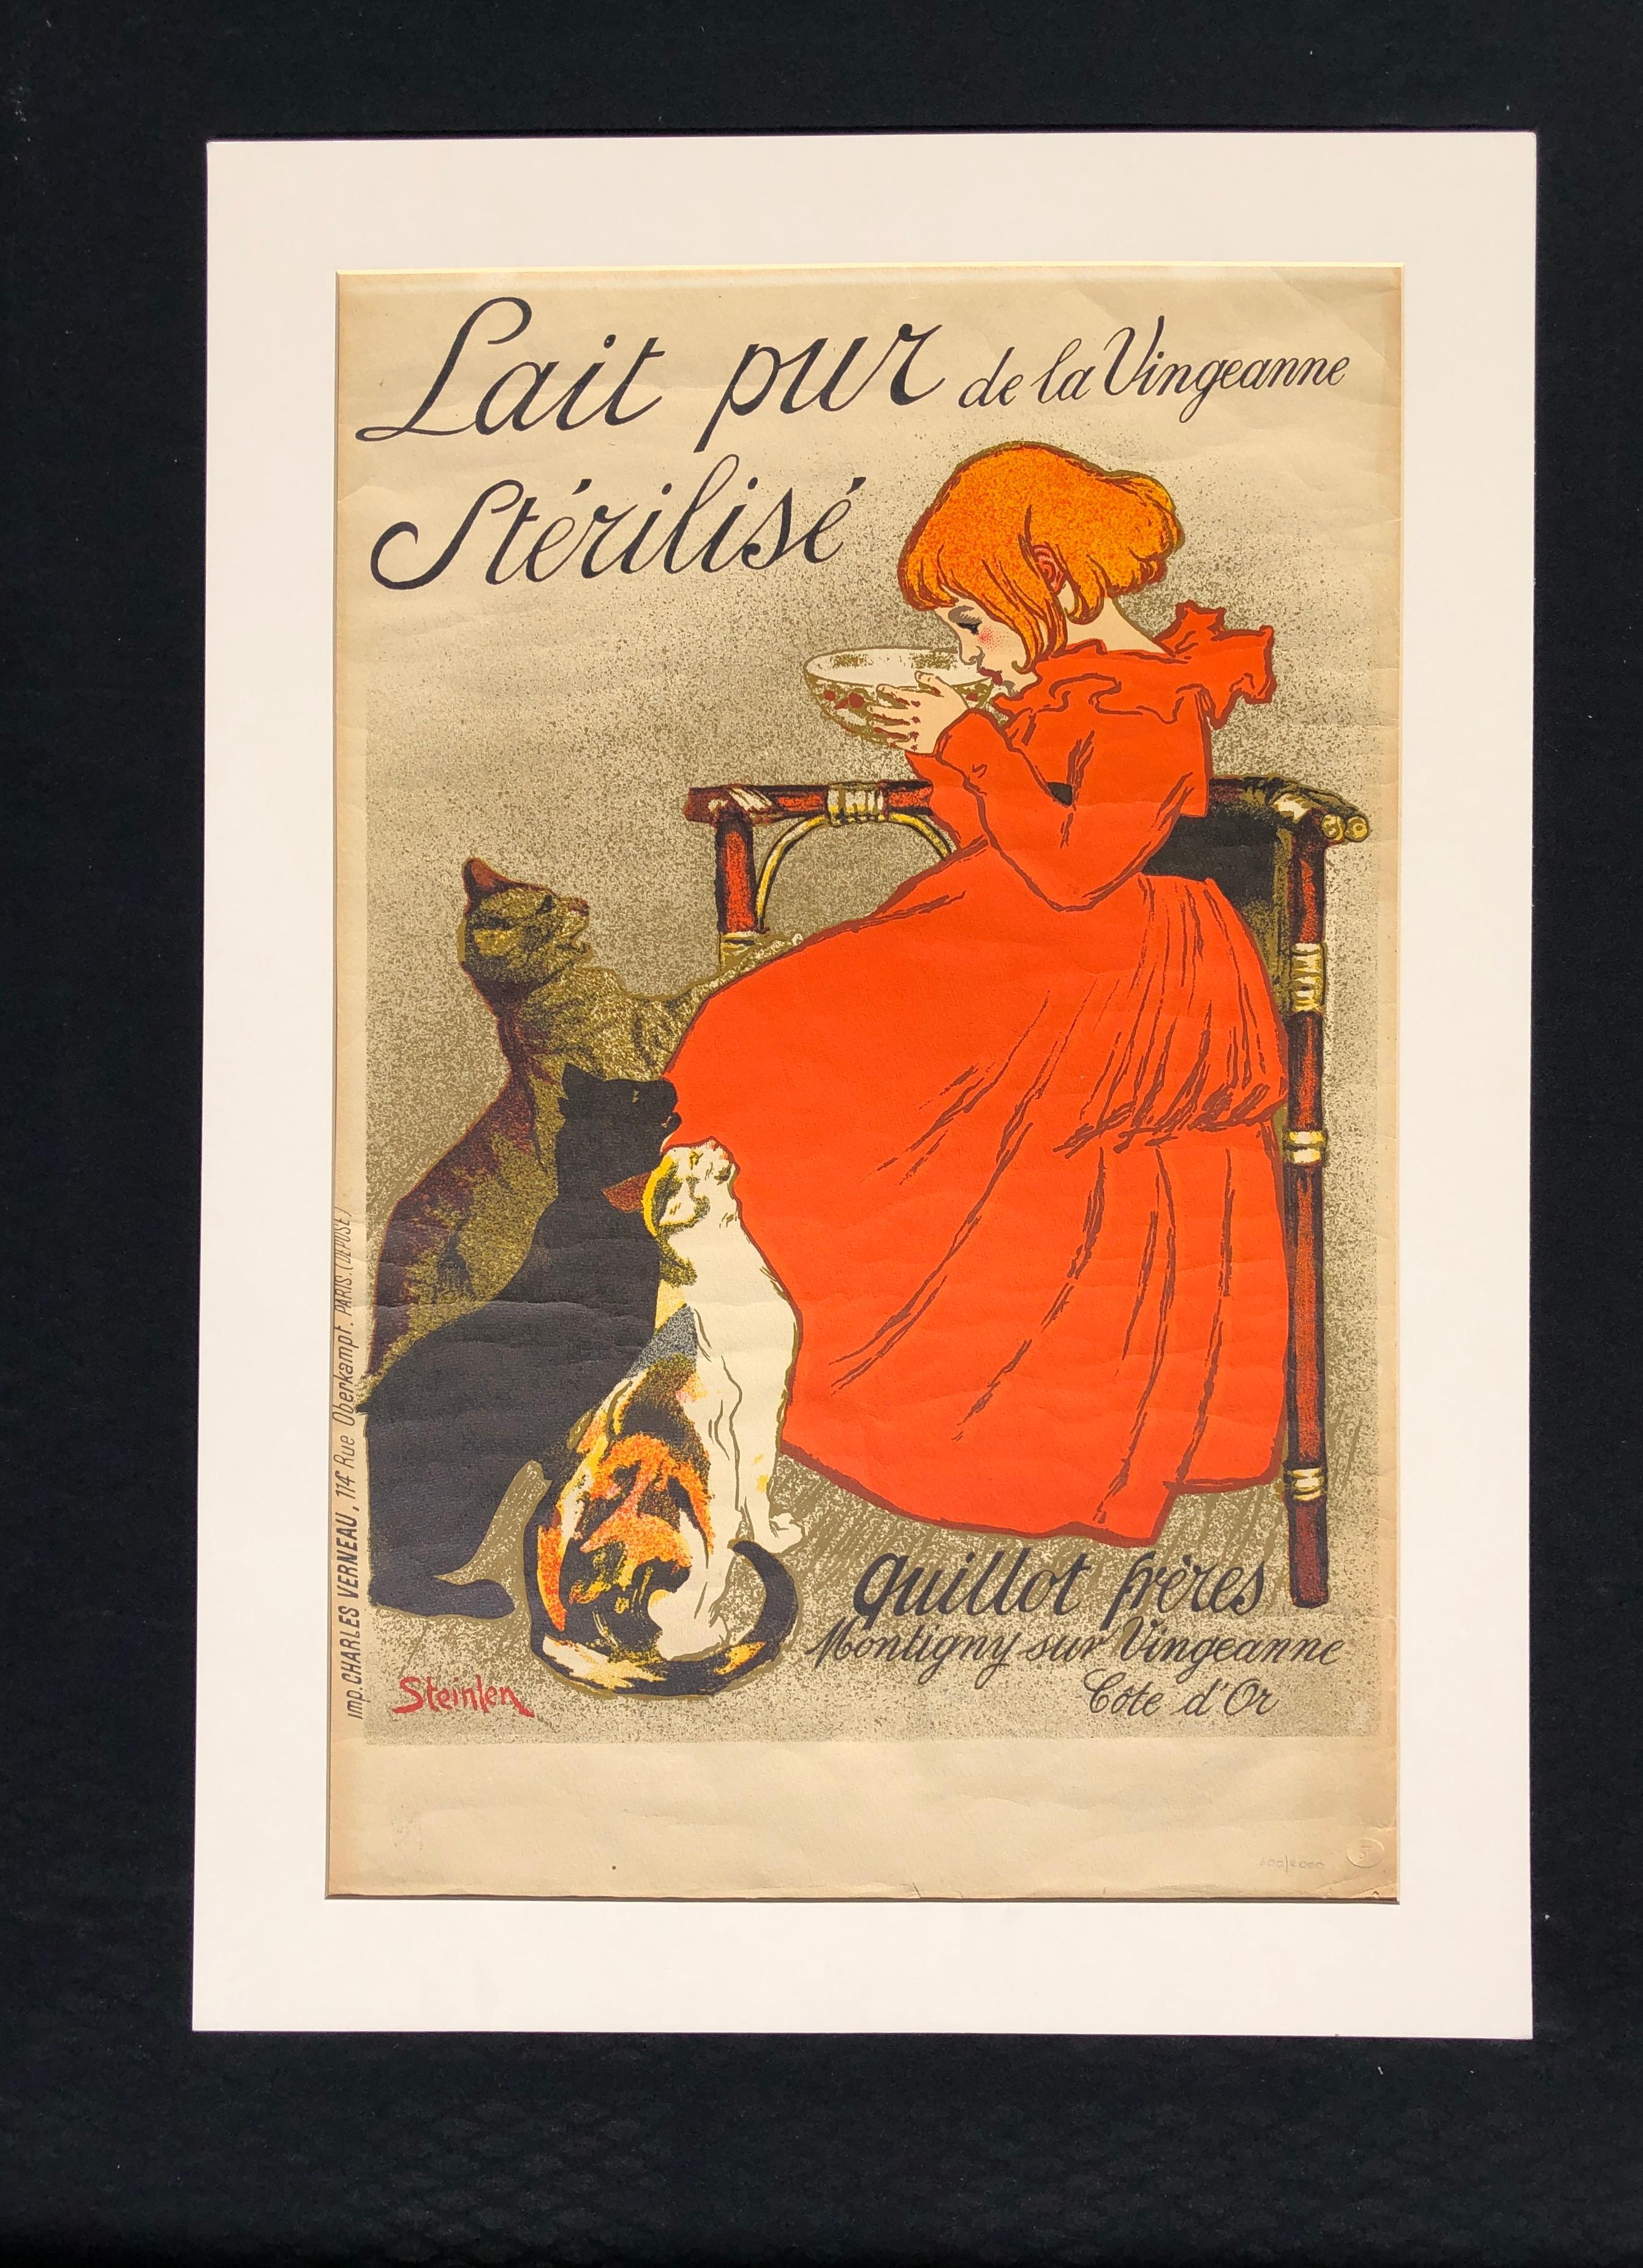 Vintage limitierte Auflage lithographische Reproduktion Poster von 